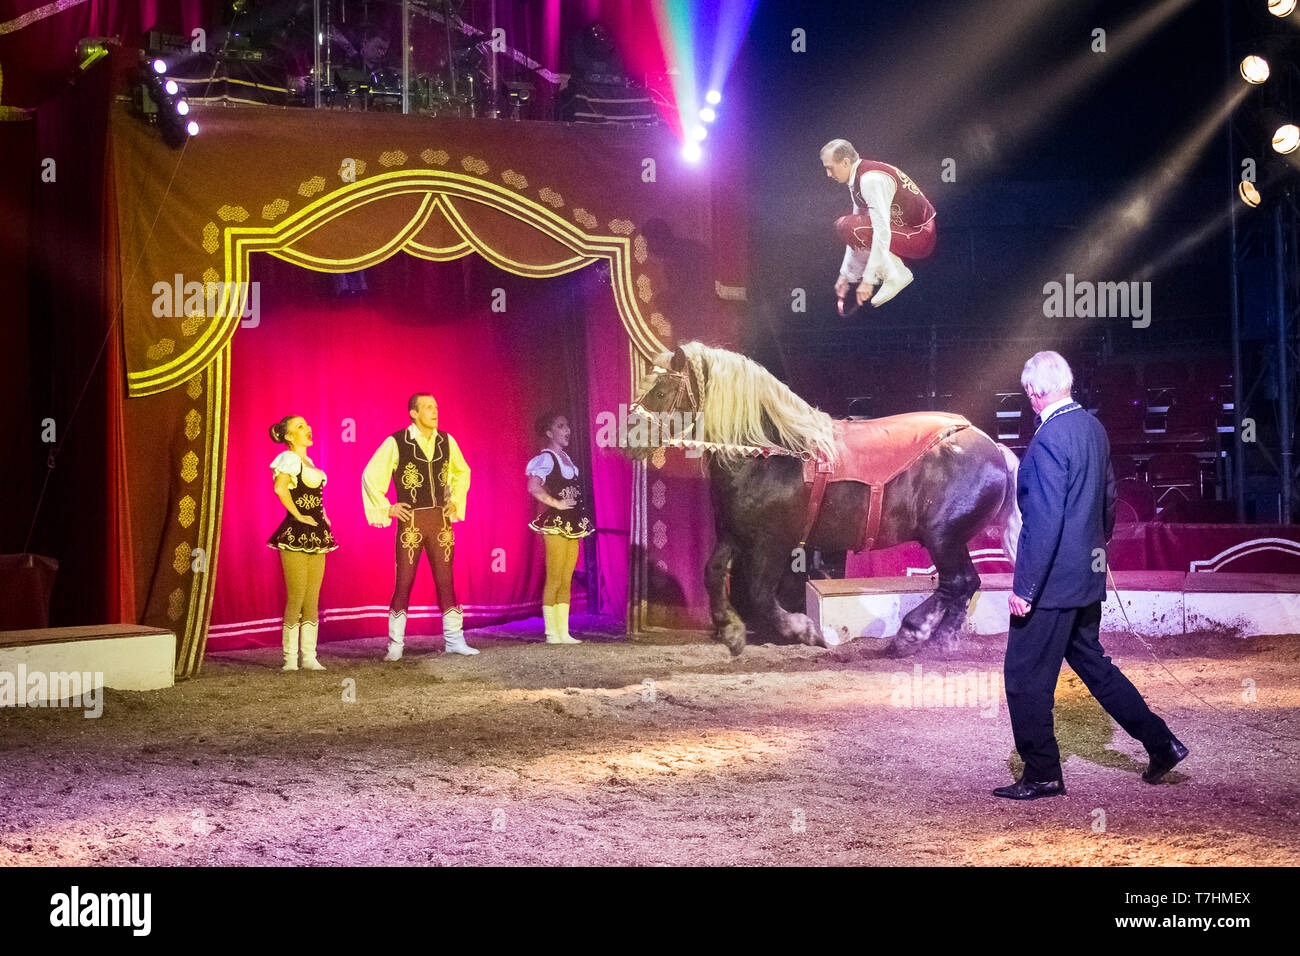 L'interprète de sauter sur le dos d'un cheval de trait lourd russe au cours d'un spectacle au Cirque Knie Louis junior, Autriche Banque D'Images